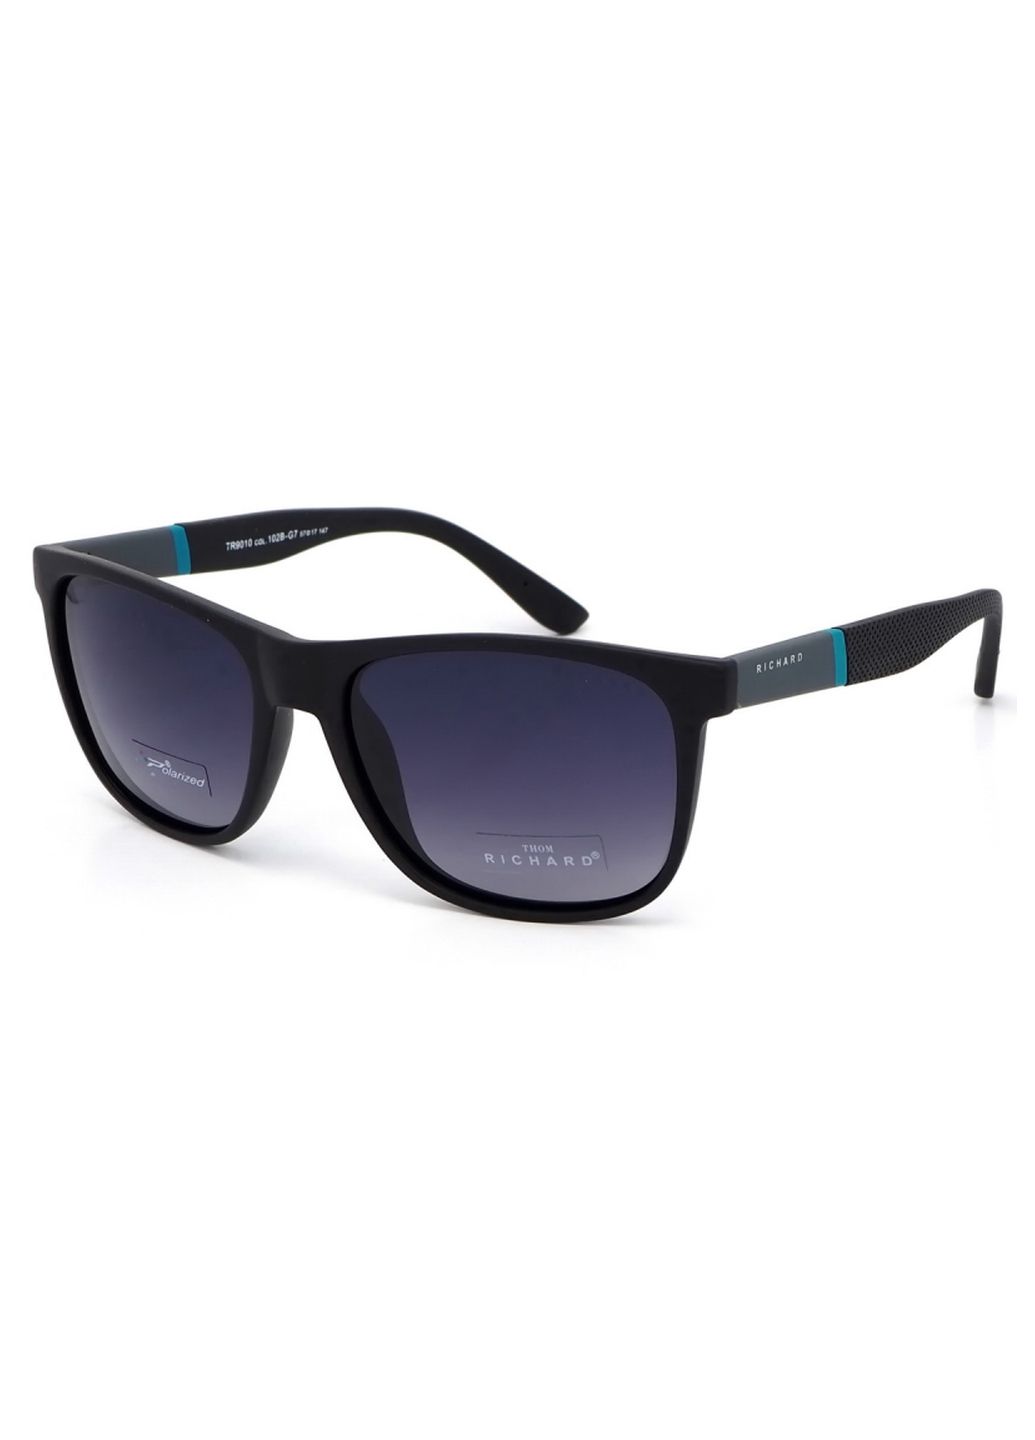 Купить Мужские солнцезащитные очки Thom Richard с поляризацией TR9010 114024 в интернет-магазине